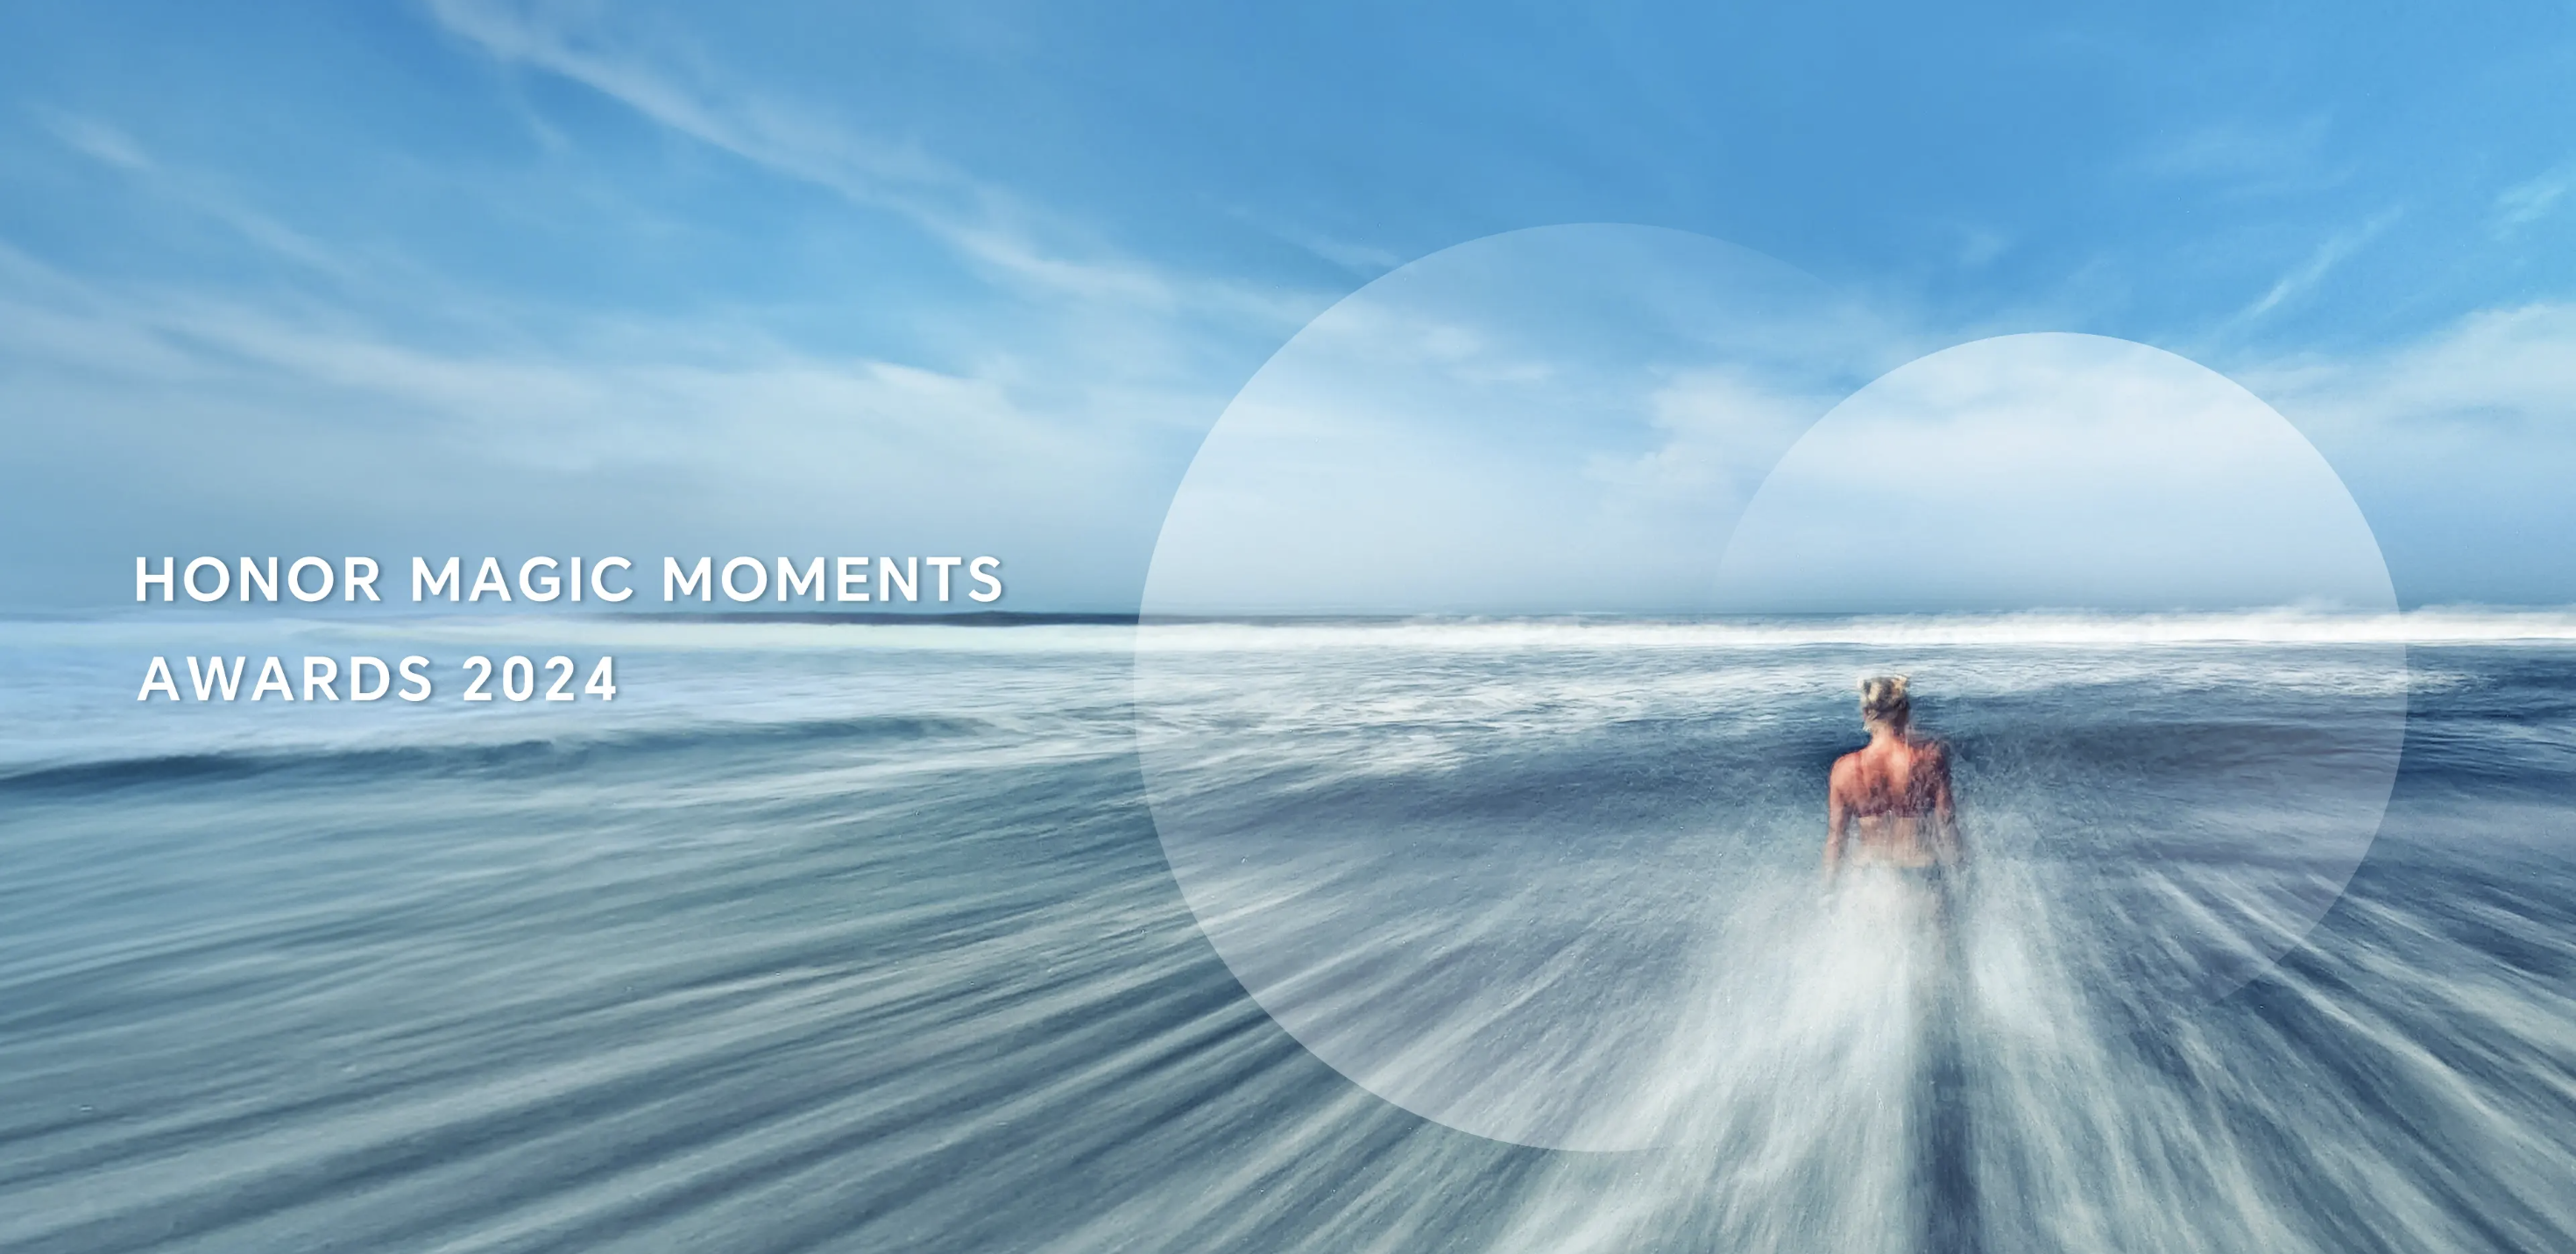 Стартовал конкурс мобильной фотографии Magic Moments Awards 2024 от HONOR